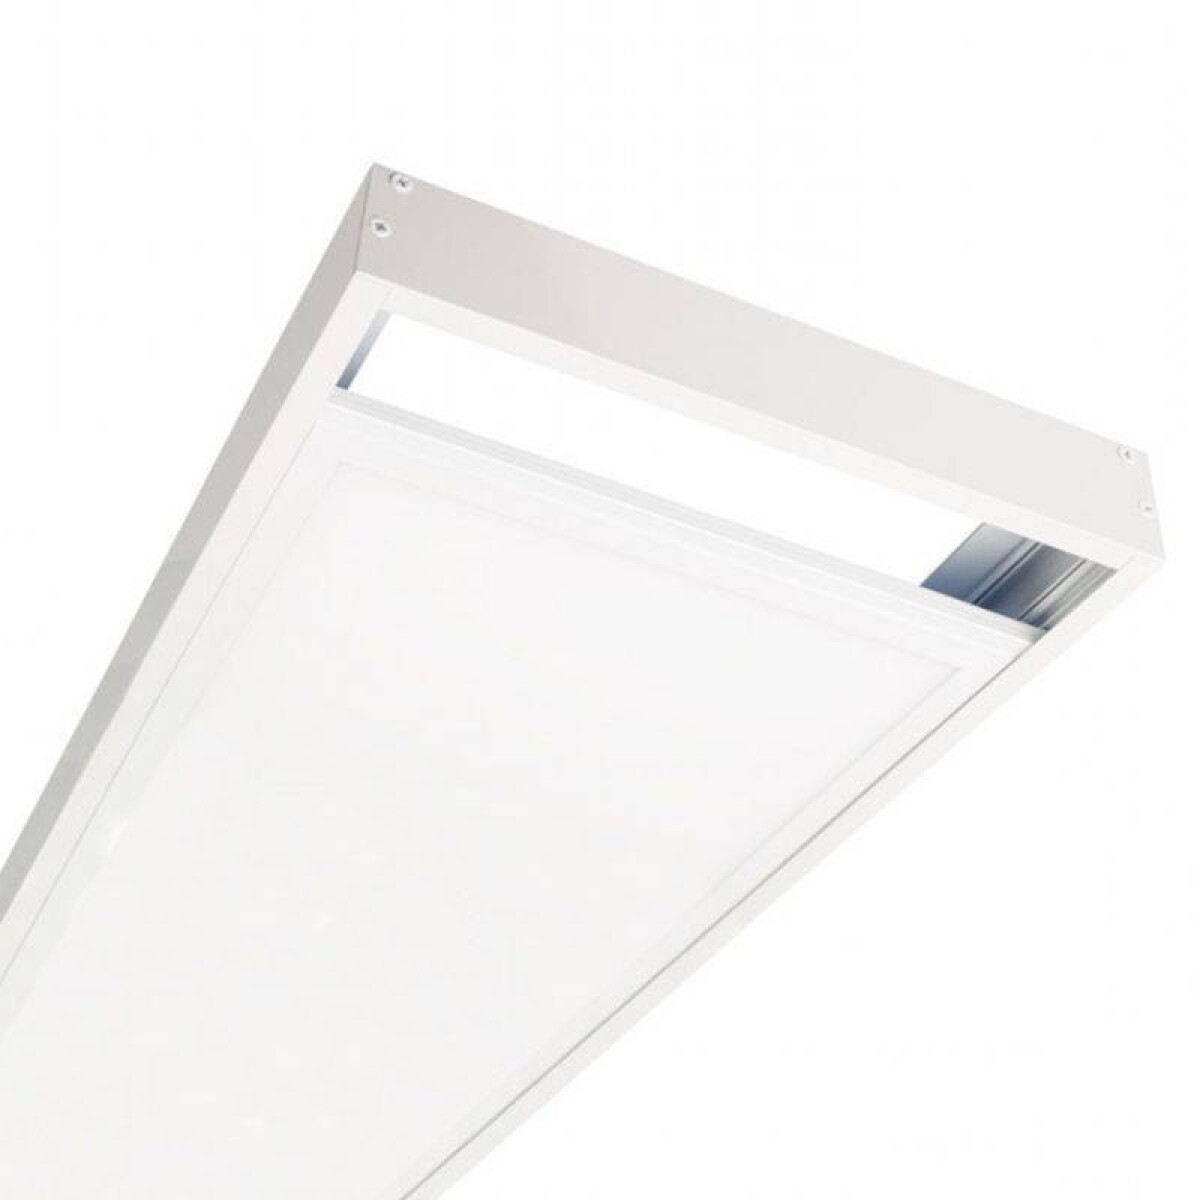 Panel led con marco para adosar 48w 120*30cm - Luz neutra 